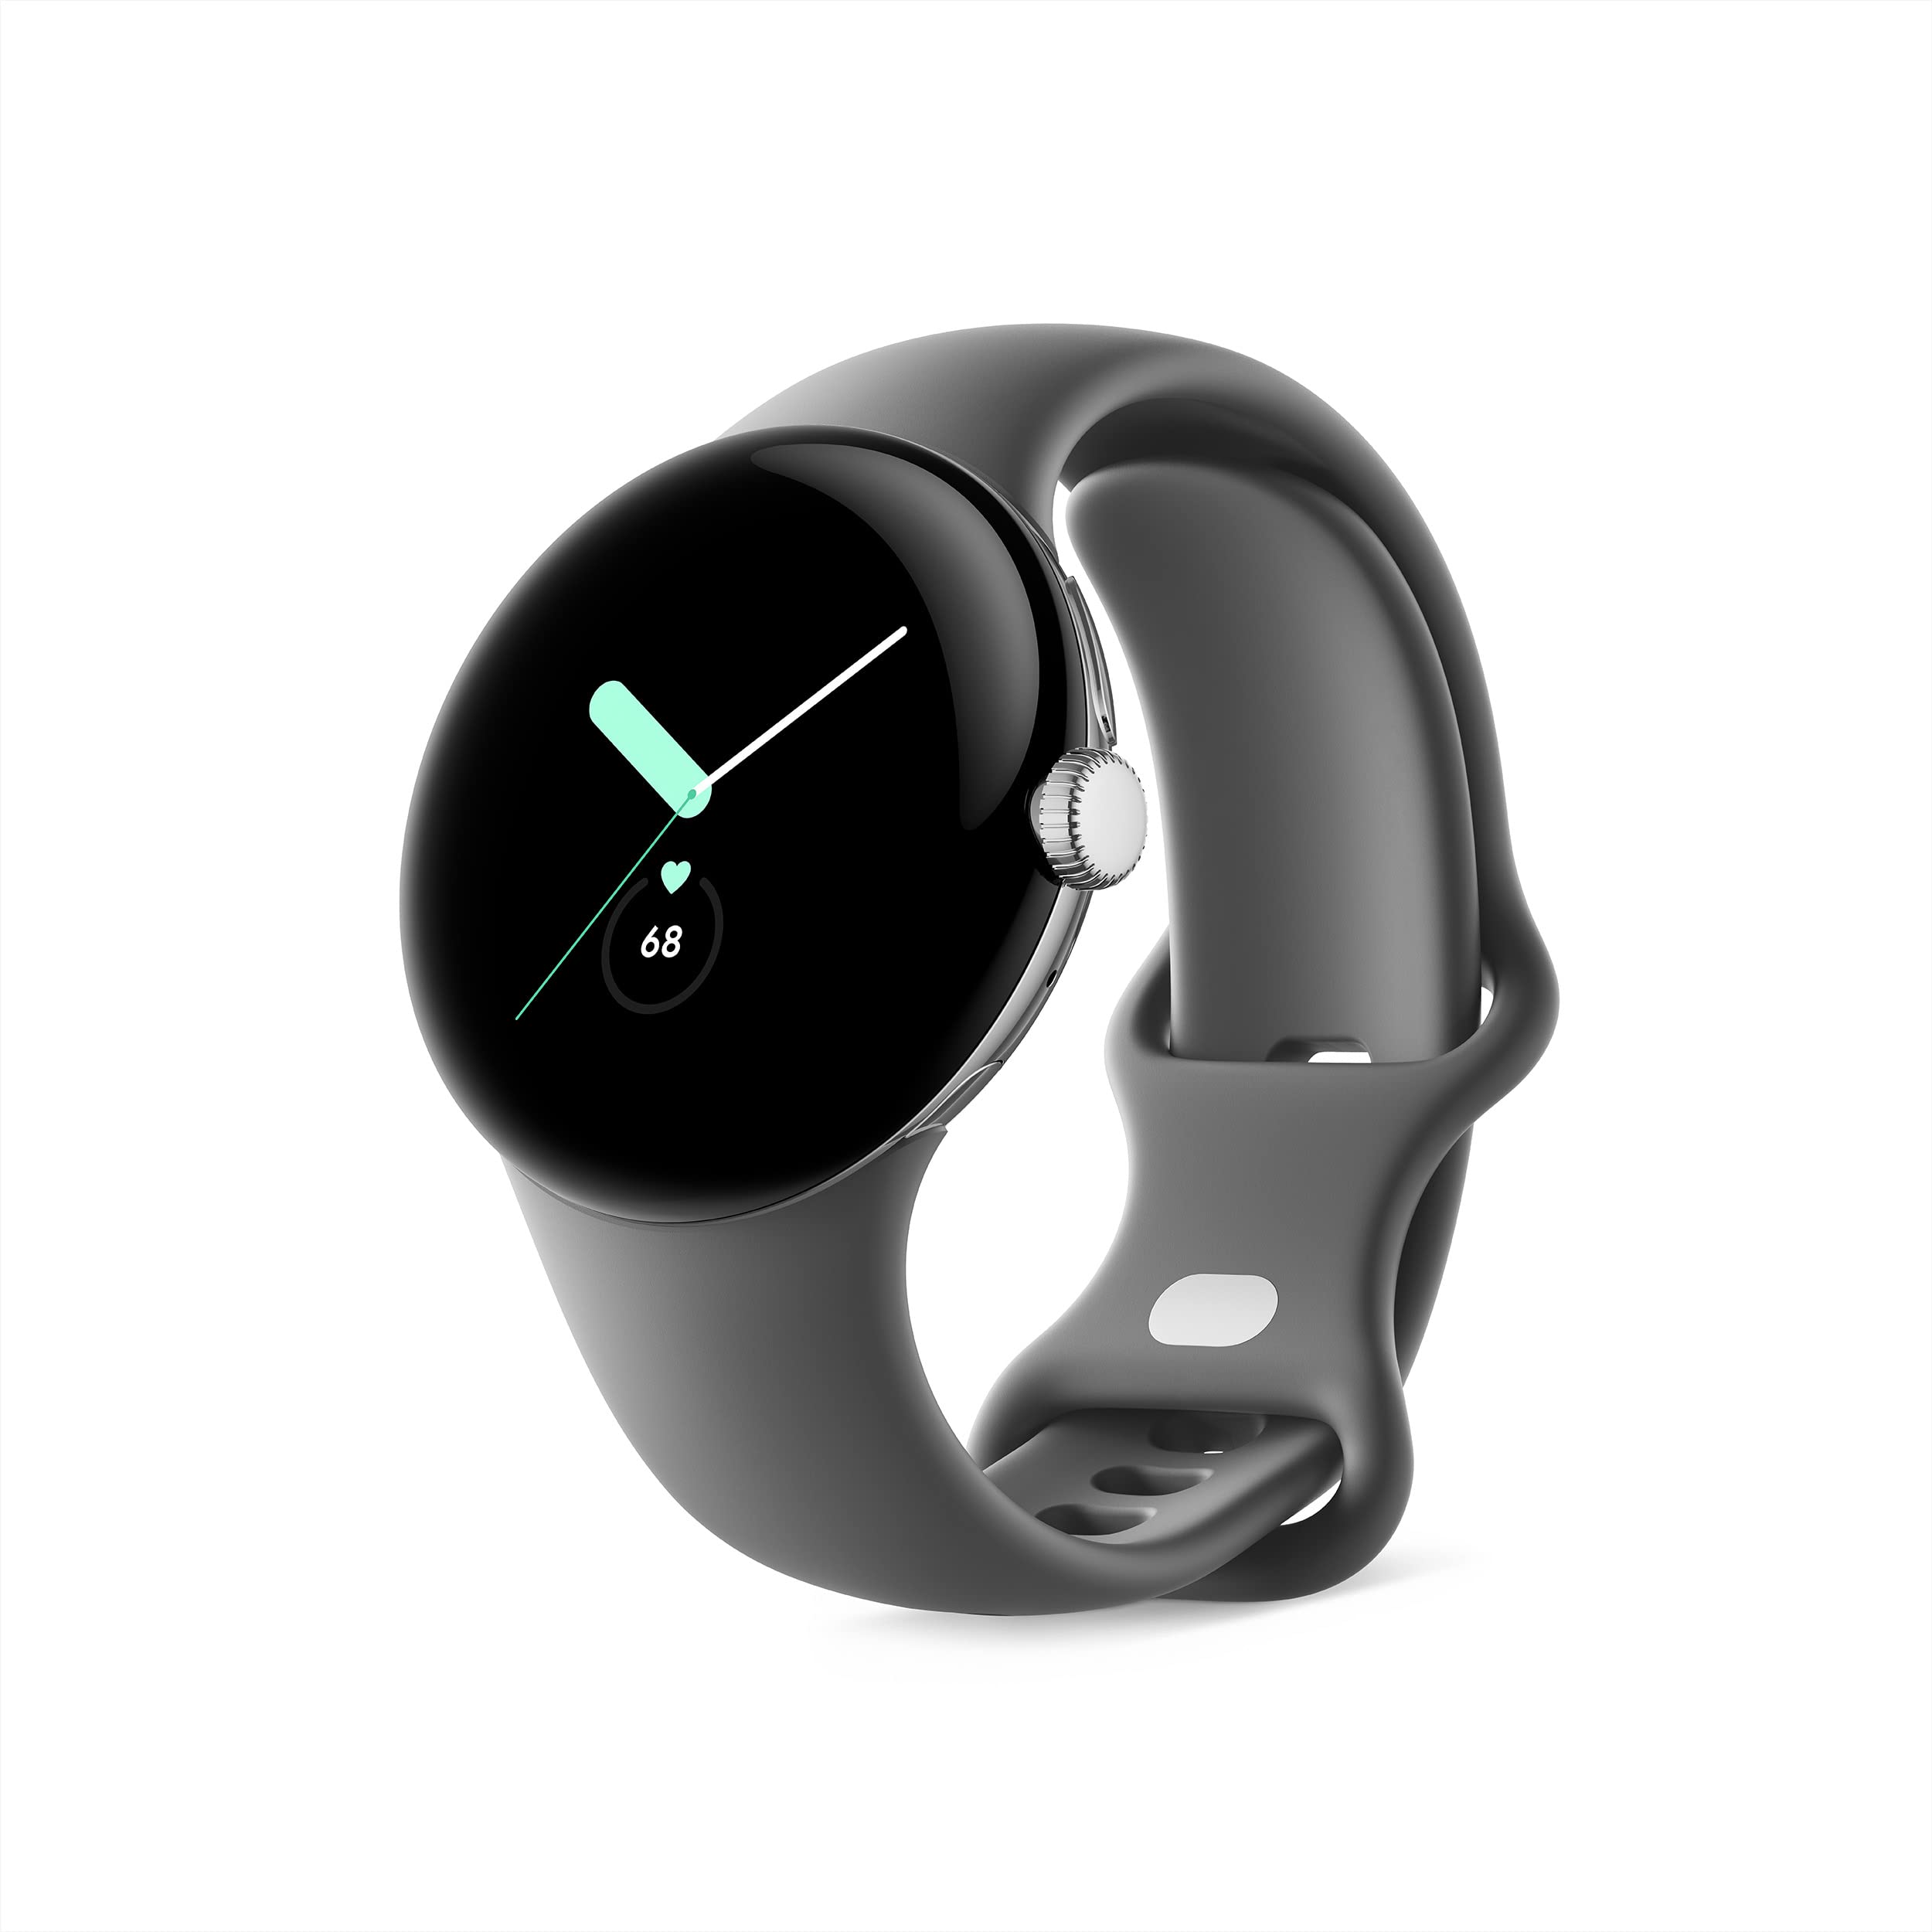 Google Pixel Watch WiFi 41mm Smartwatch $199.99